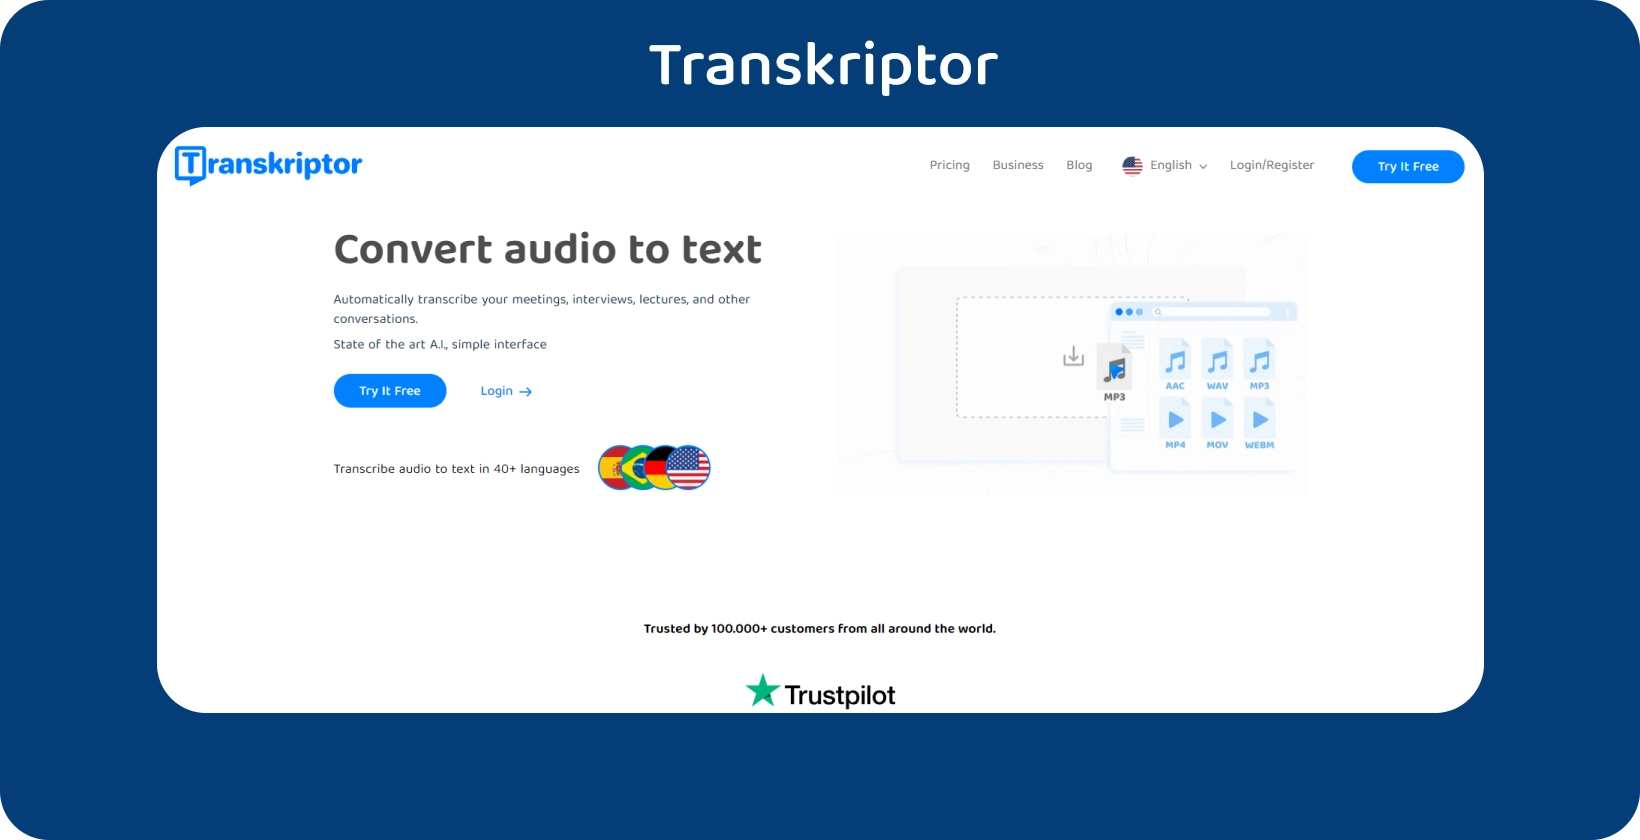 Transkriptor trang chủ với lời kêu gọi hành động rõ ràng, cung cấp dịch vụ phiên âm âm thanh thành văn bản.